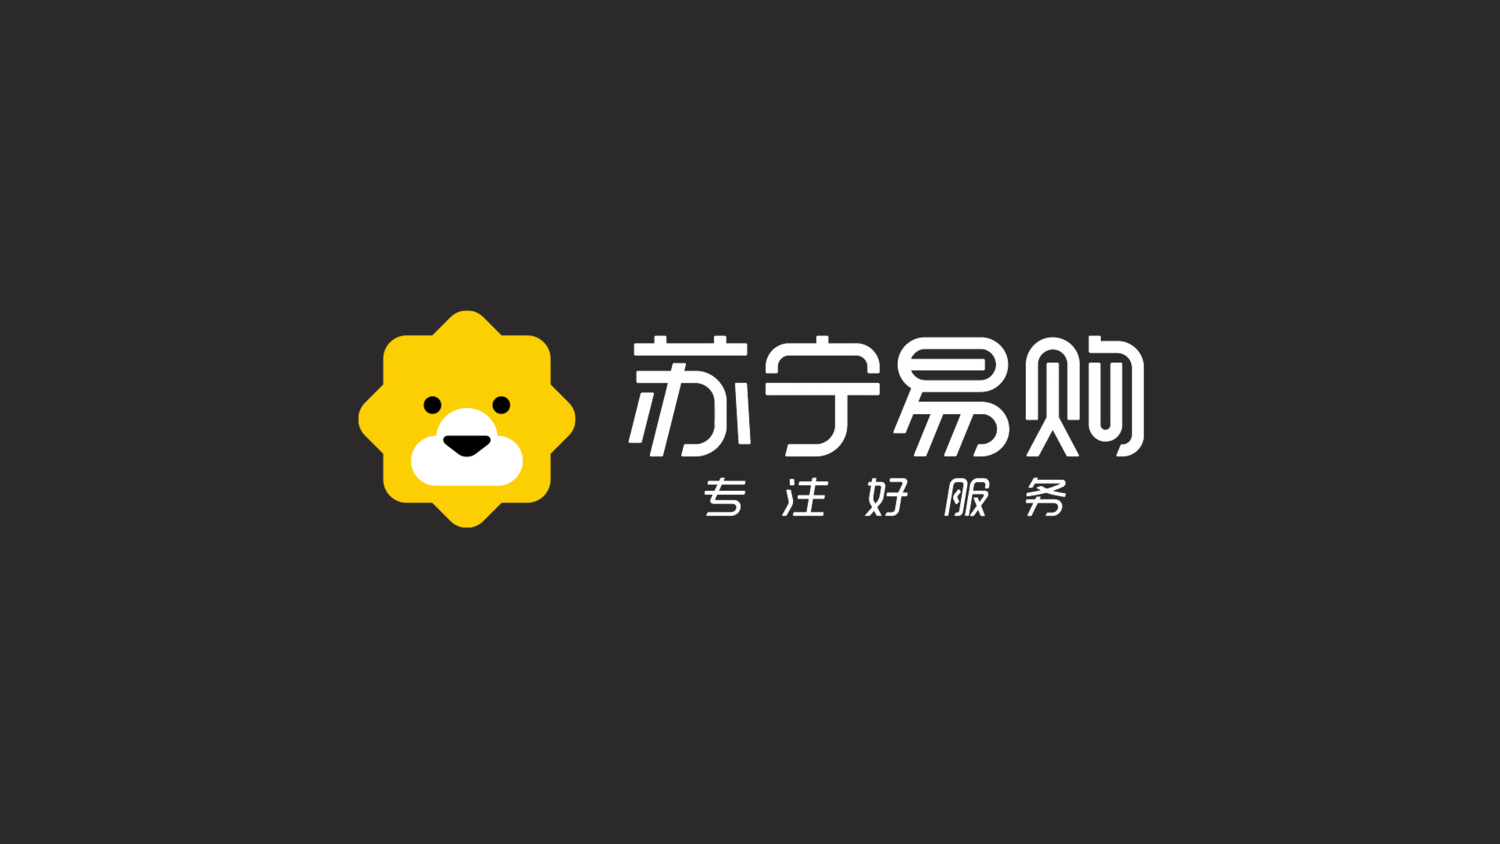 萌!苏宁更新logo颜色和标准字